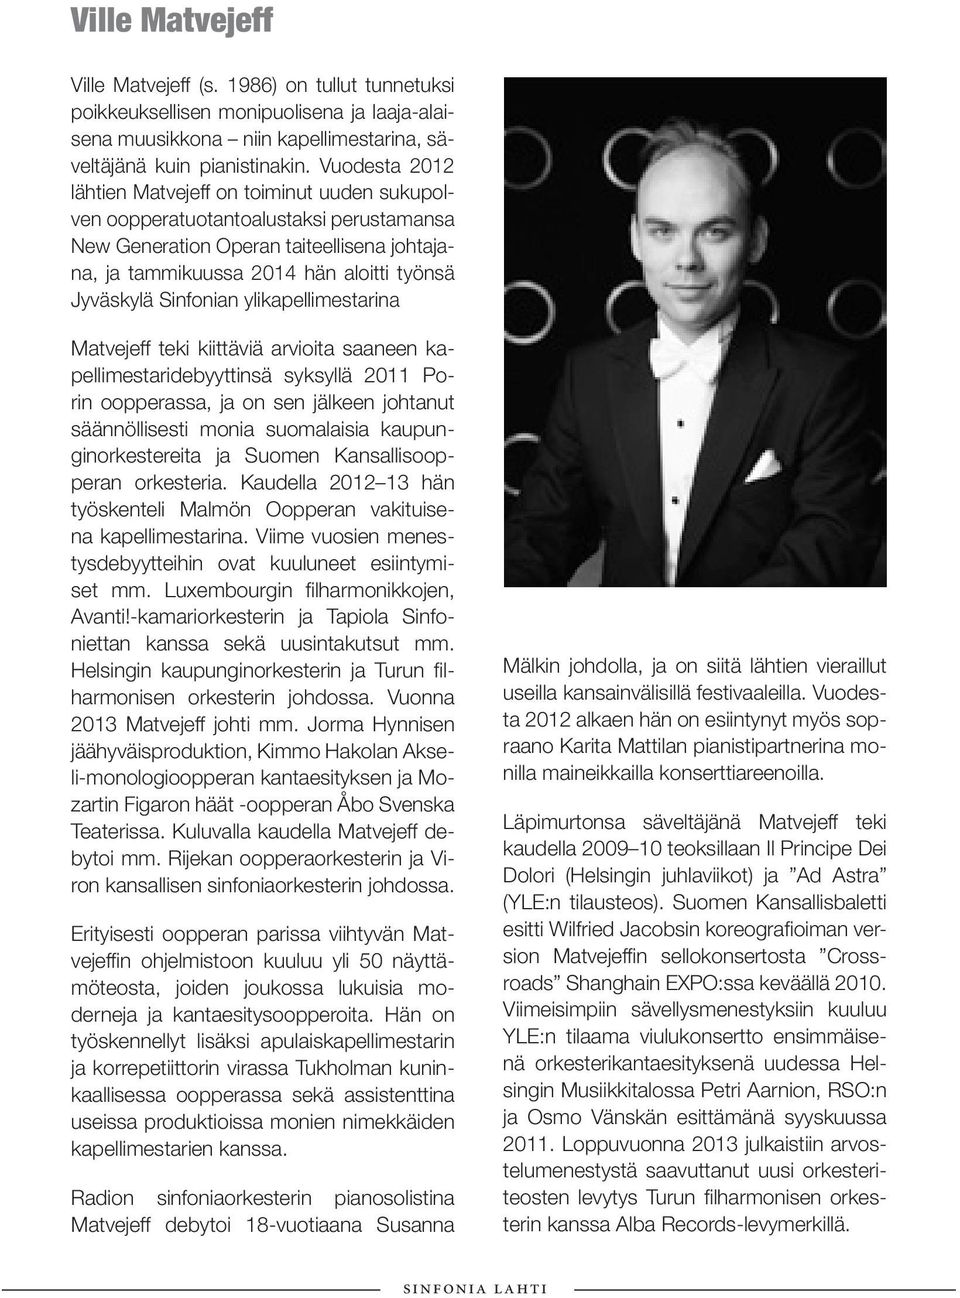 Sinfonian ylikapellimestarina Matvejeff teki kiittäviä arvioita saaneen kapellimestaridebyyttinsä syksyllä 2011 Porin oopperassa, ja on sen jälkeen johtanut säännöllisesti monia suomalaisia